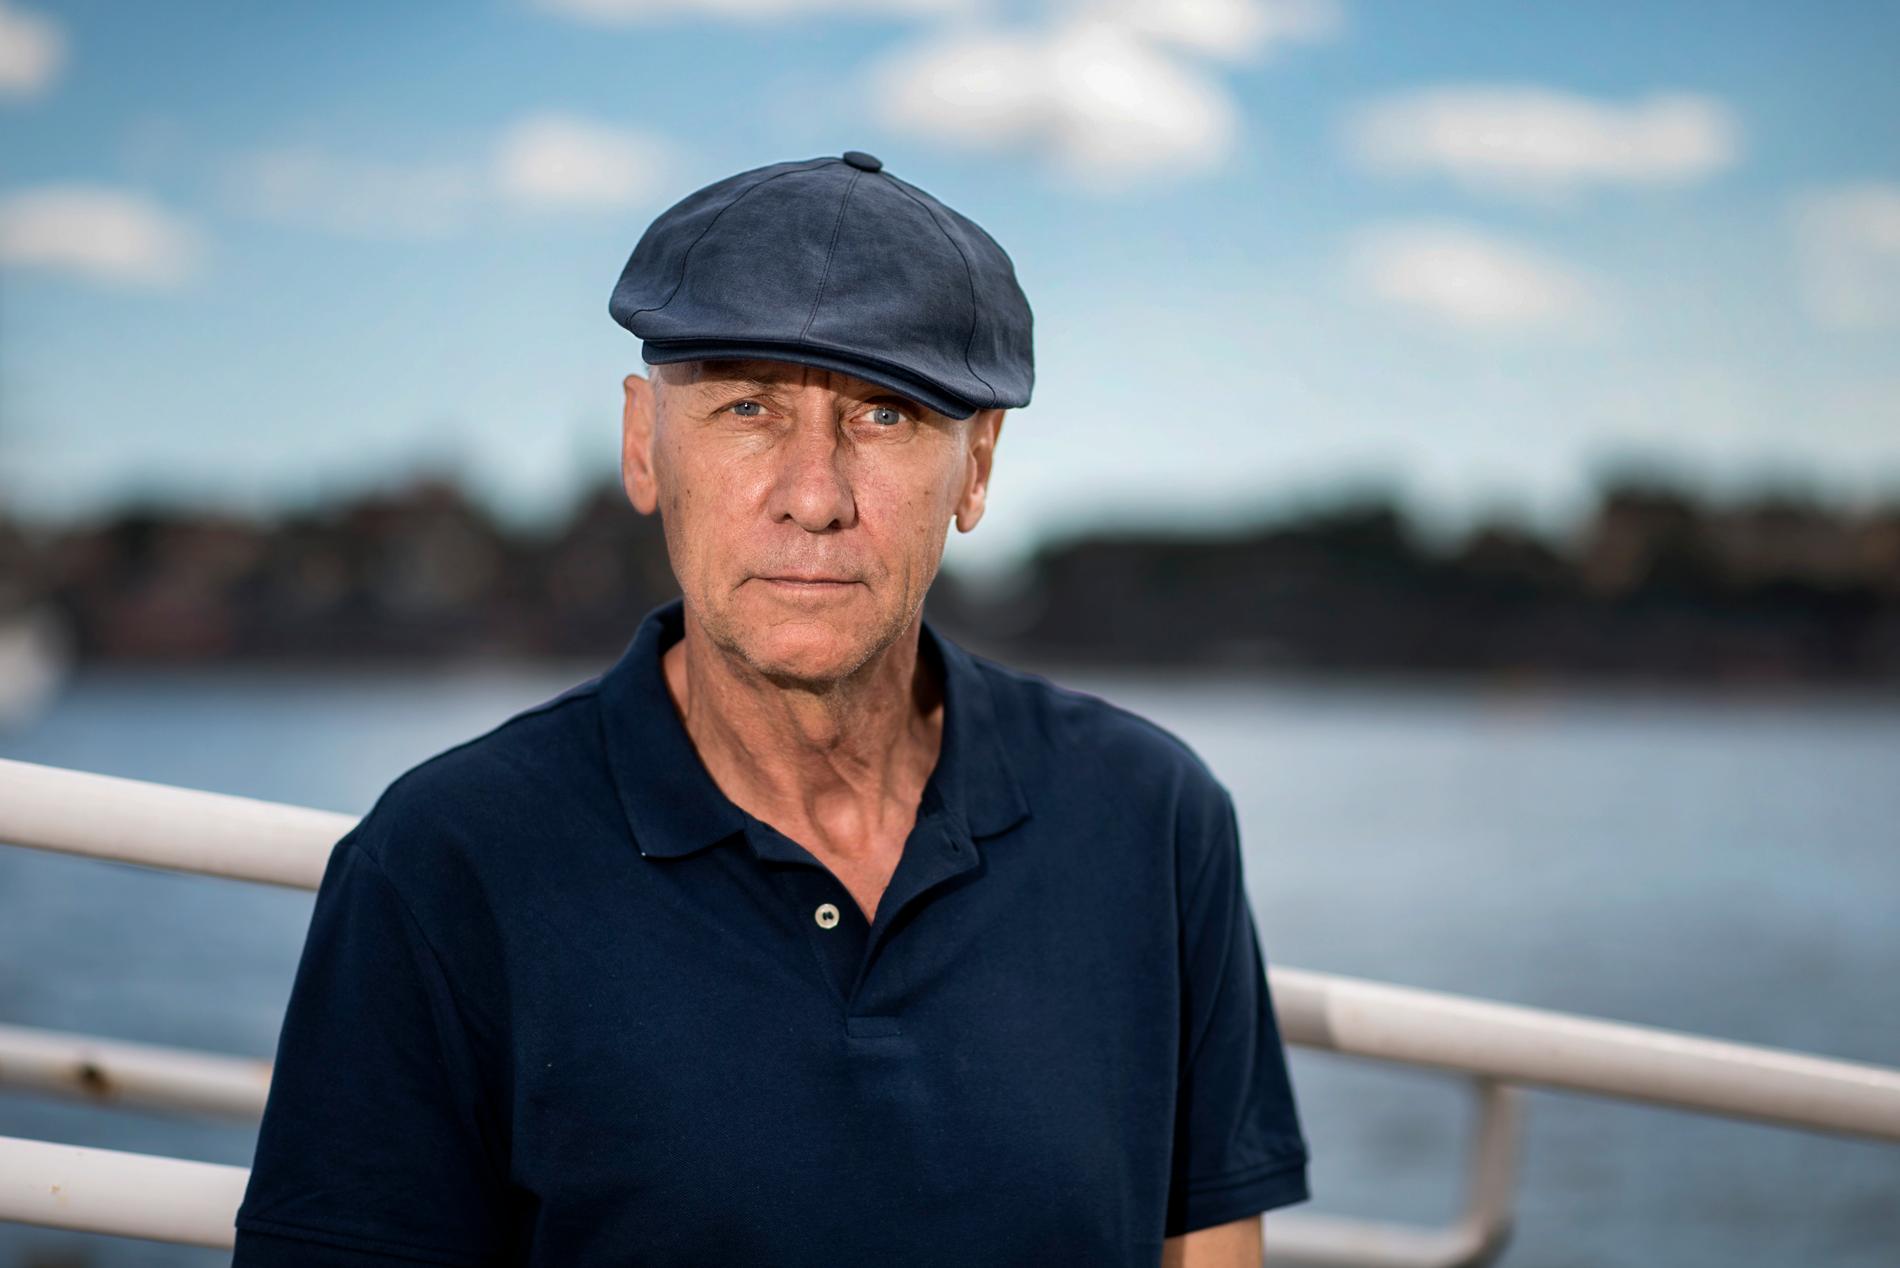 DRABBADES AV CANCER Författaren Håkan Nesser hade lovat grannen att skriva en bok som utspelade sig på Gotland. Sedan fick han cancer. – Jag tänkte att innan jag dör måste jag skriva något från Gotland, säger han.